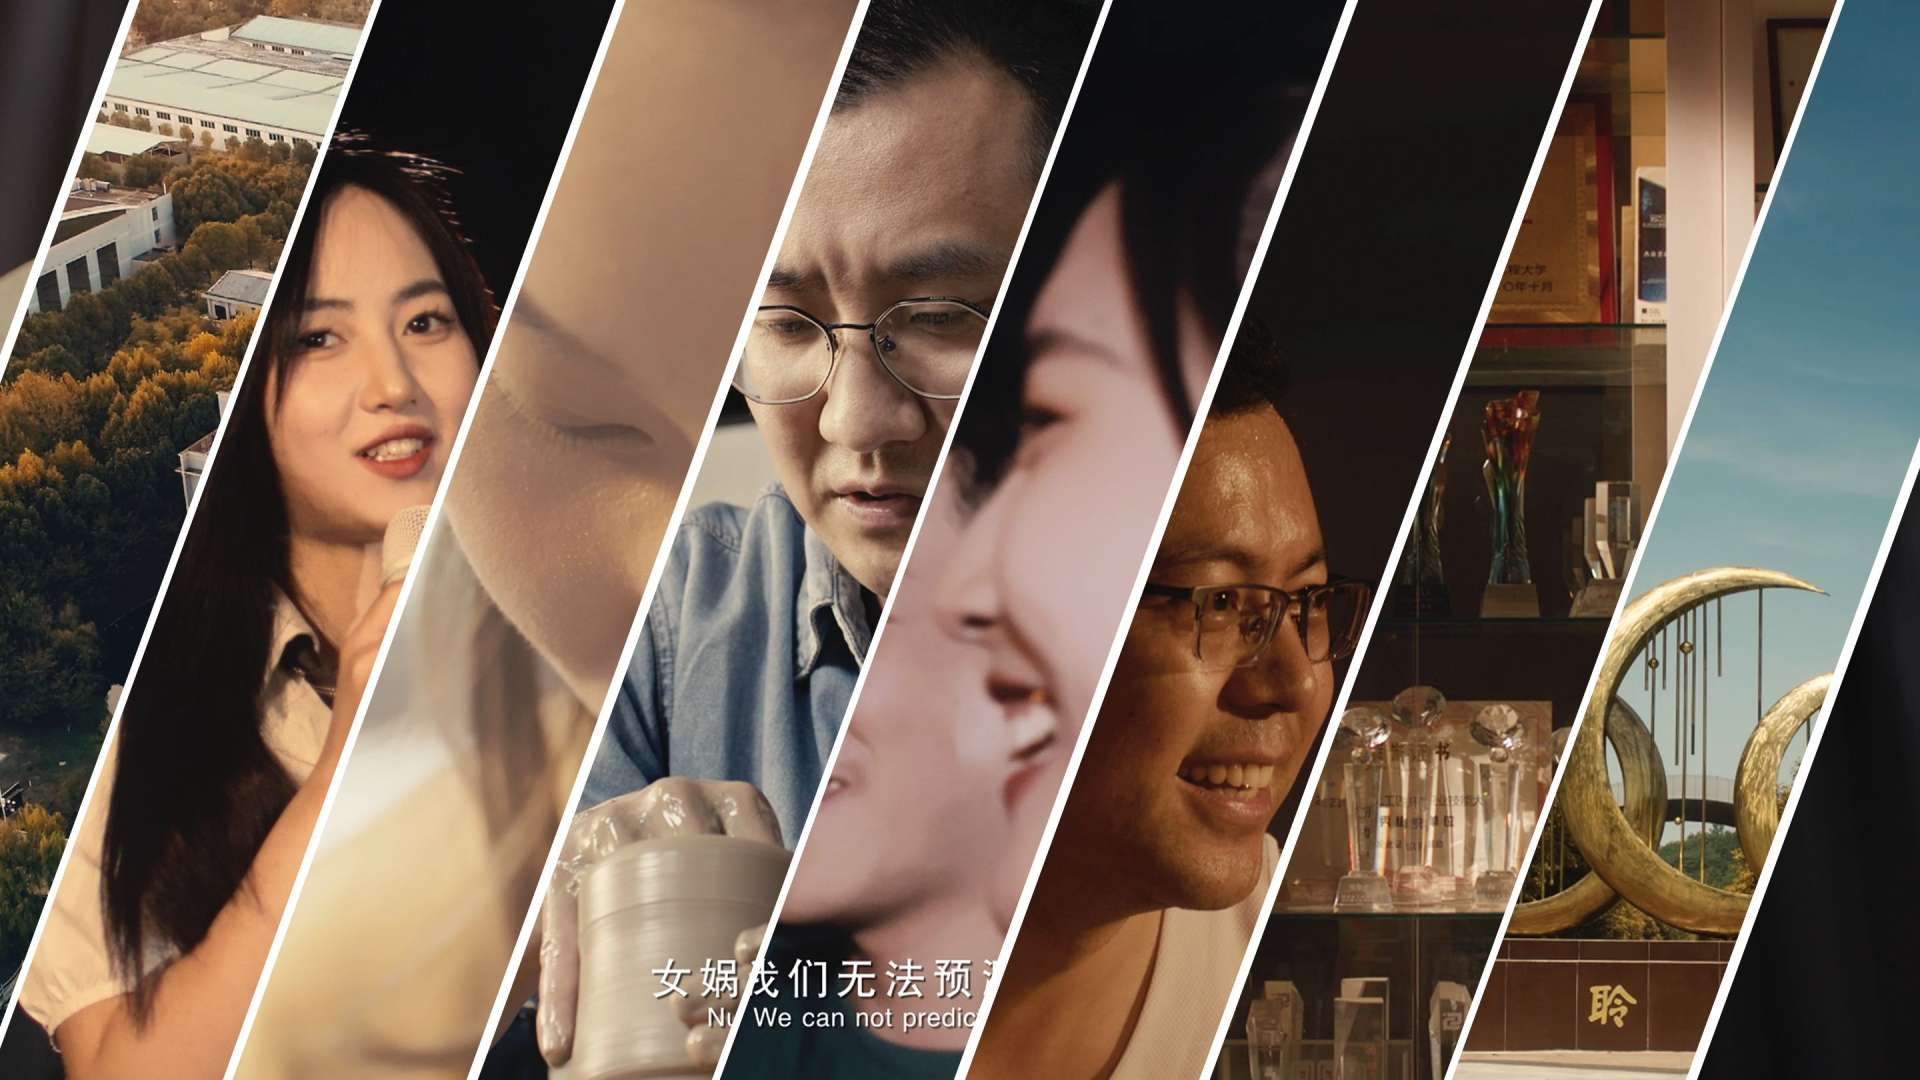 《初夏回忆录》-武汉工程大学工业设计系招生宣传片